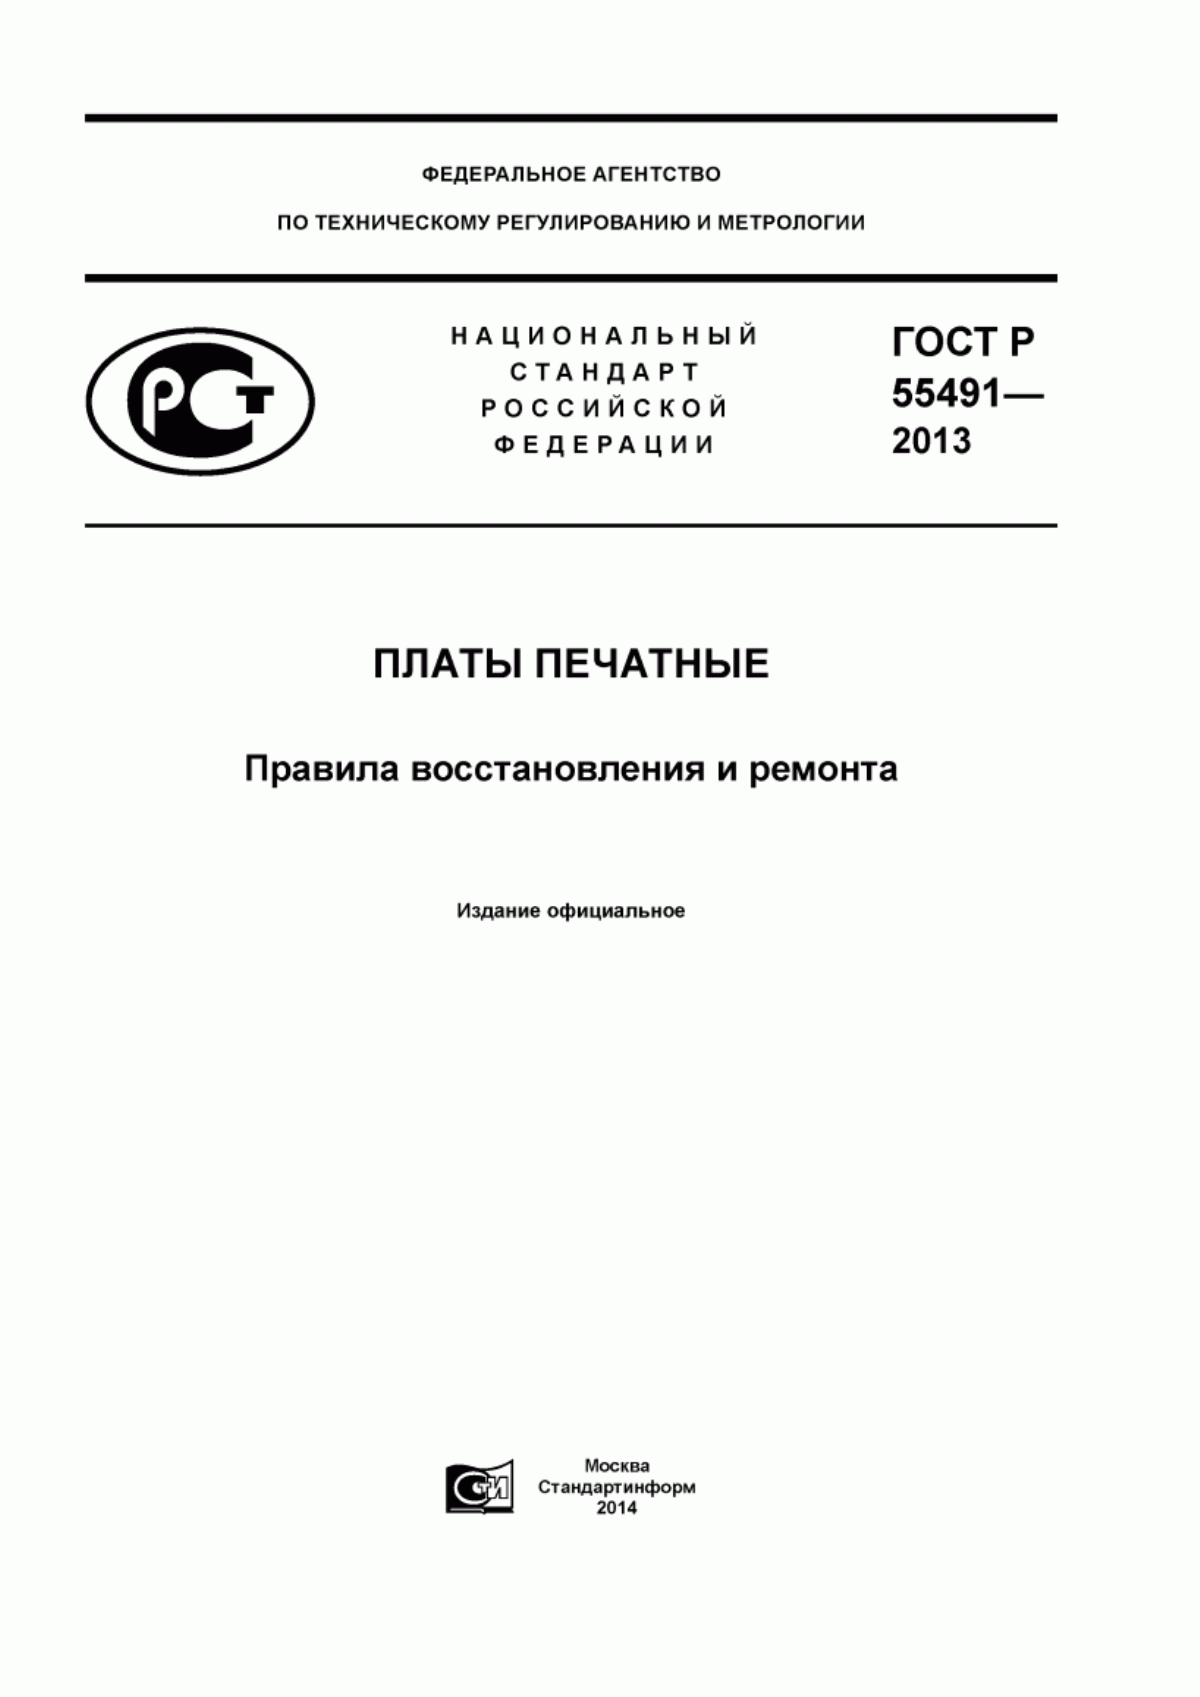 ГОСТ Р 55491-2013 Платы печатные. Правила восстановления и ремонта